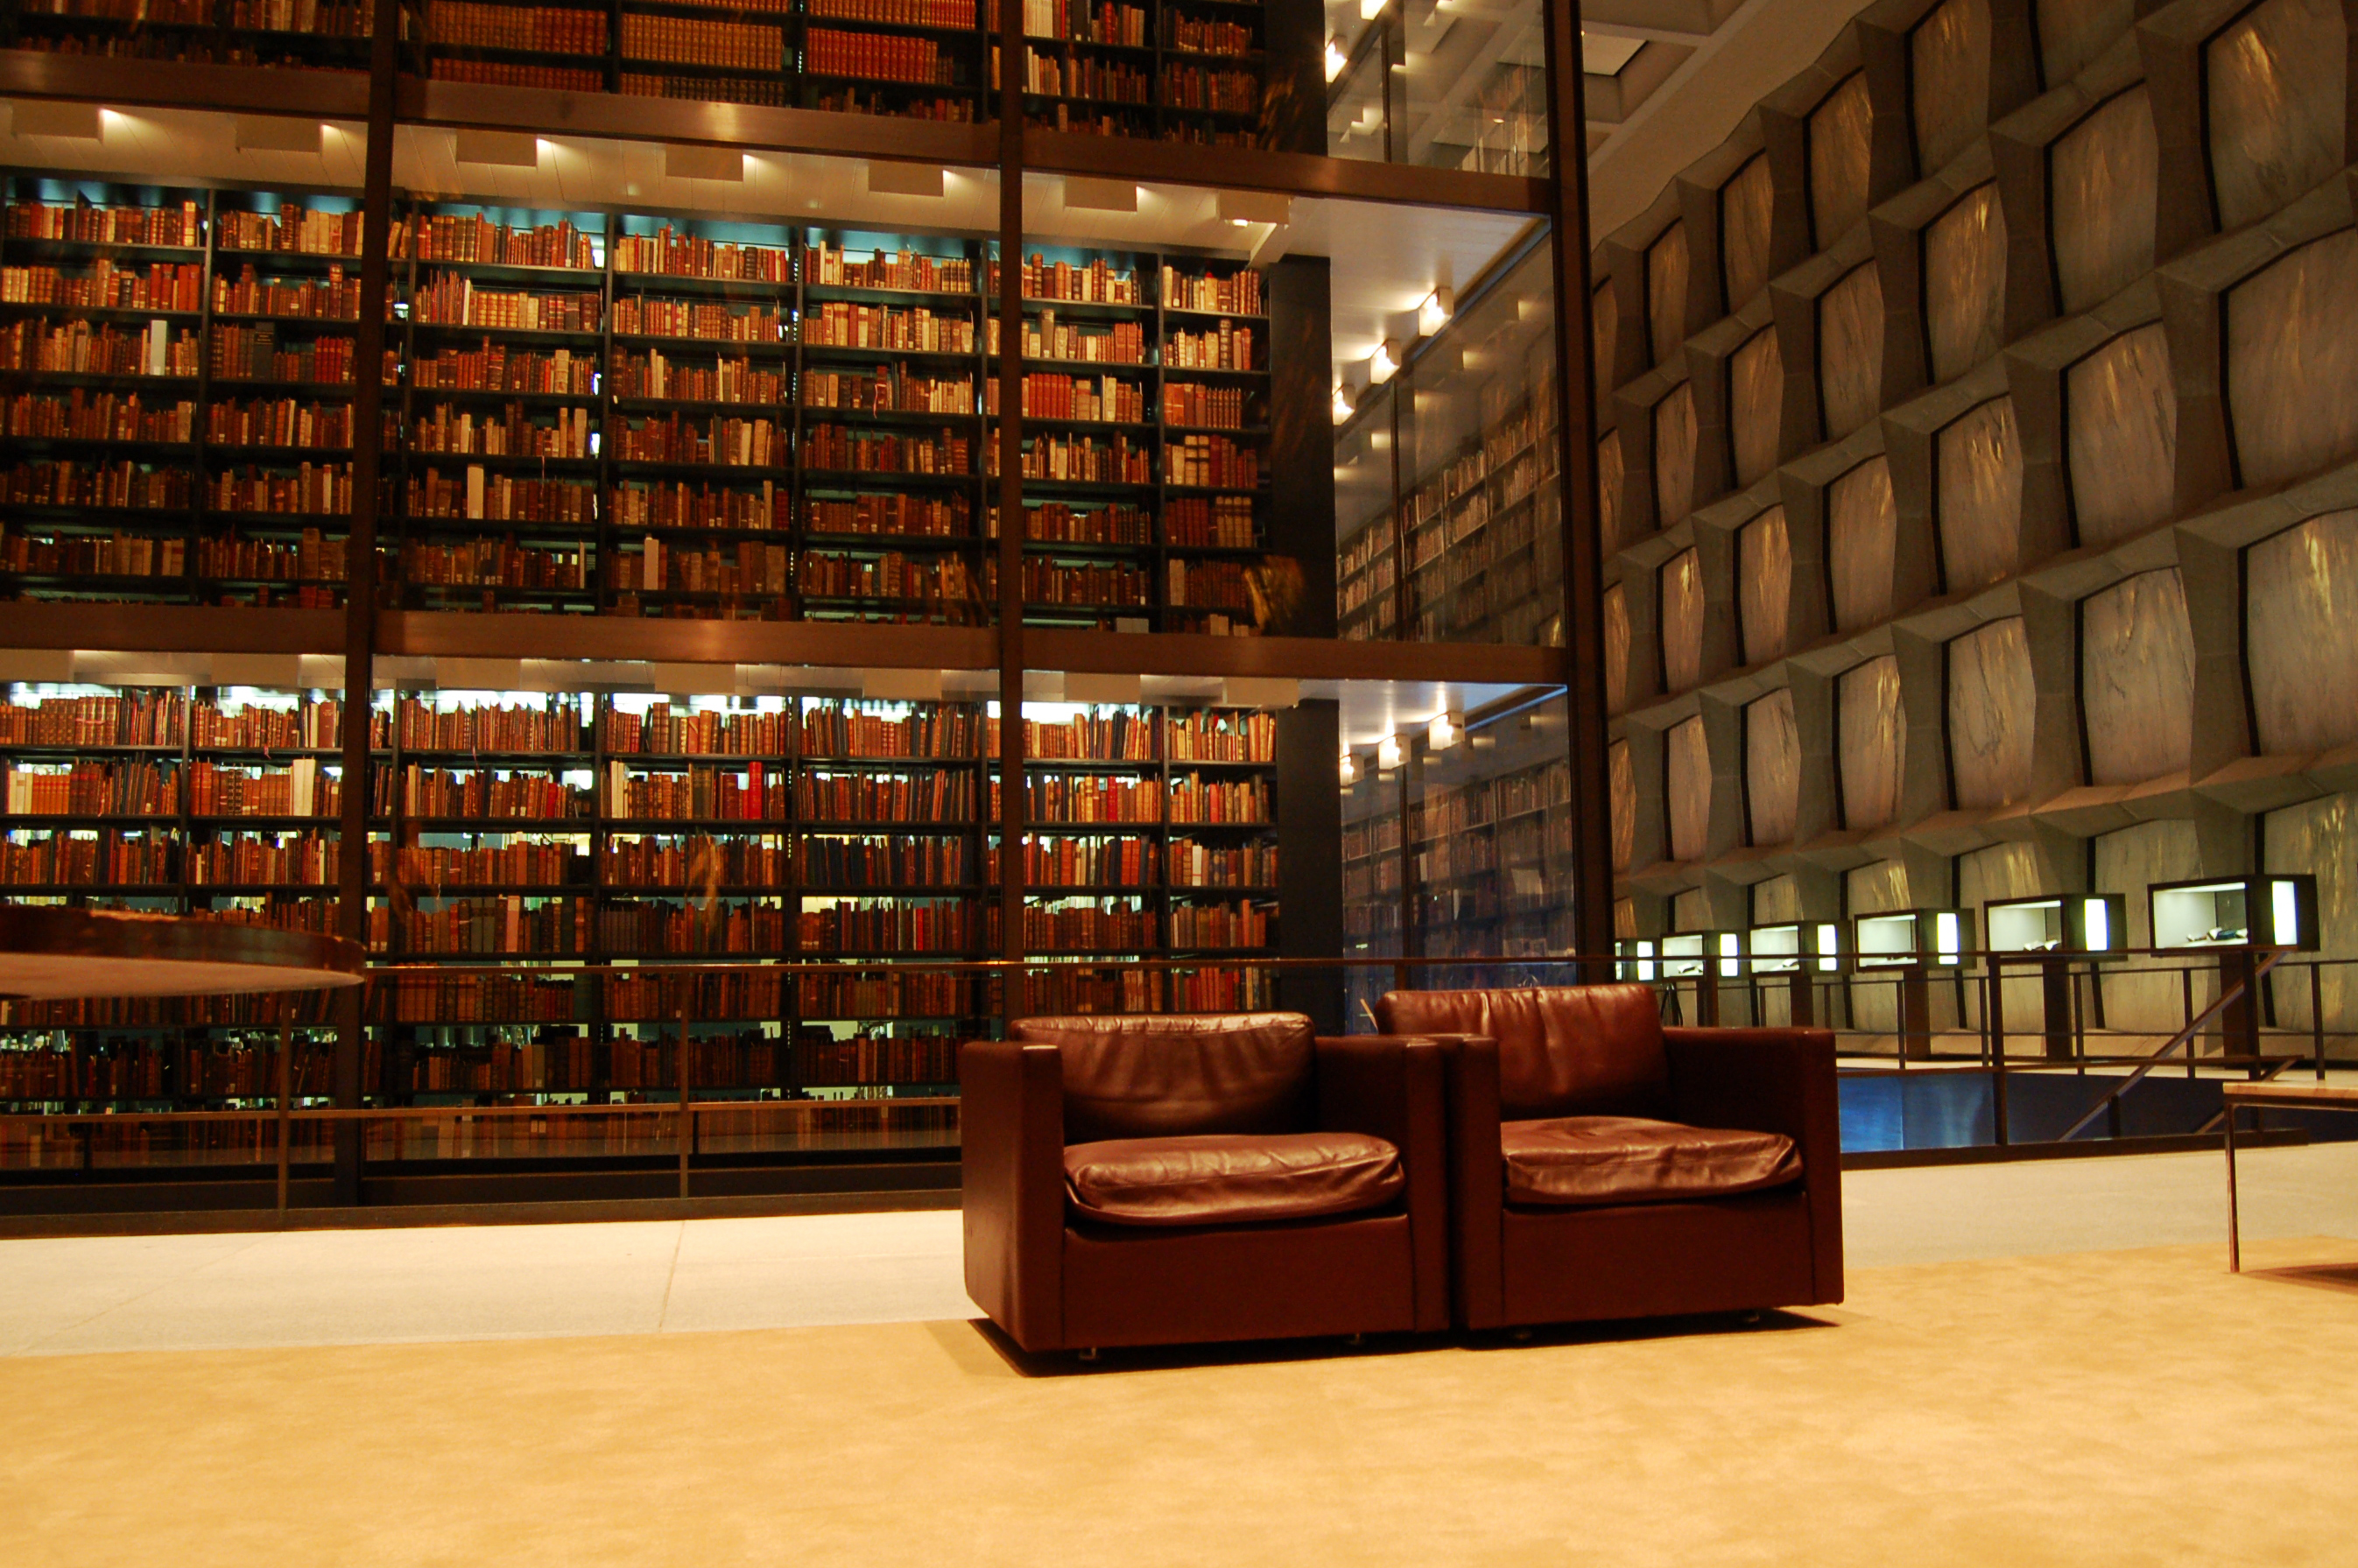 Собрание книг в библиотеках. Йельский университет библиотека. Библиотека Бейнеке в Йельском университете. Королевская библиотека Дании. Библиотека Бейнеке в Йельском университете (1963).